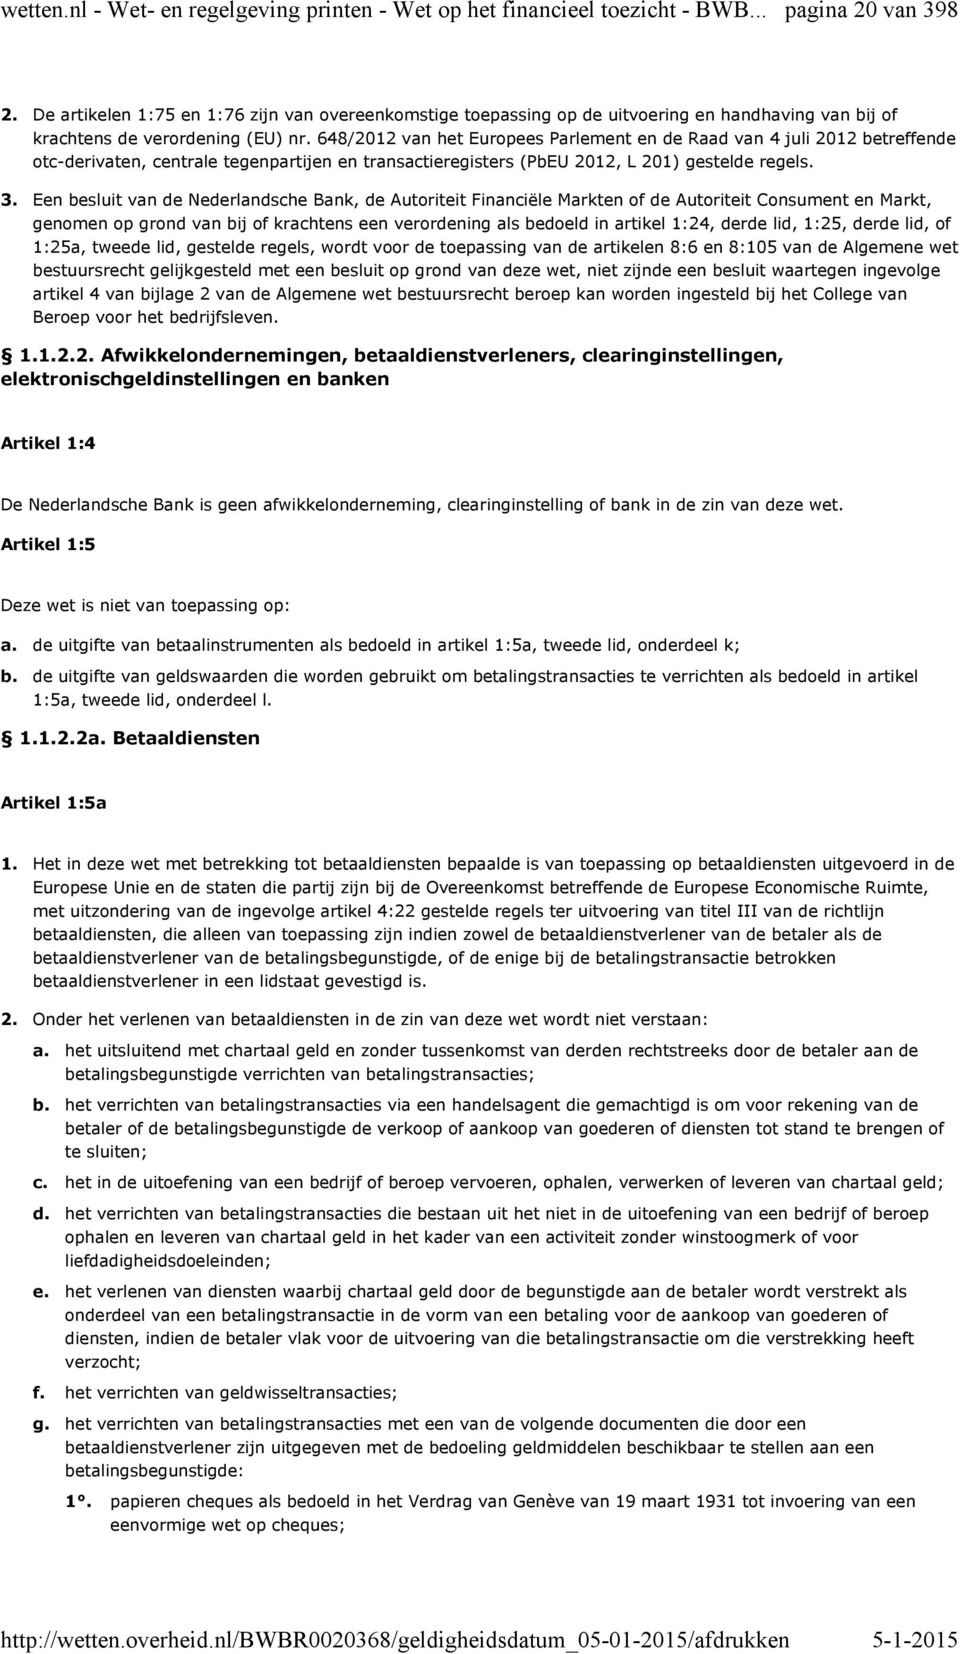 648/2012 van het Europees Parlement en de Raad van 4 juli 2012 betreffende otc-derivaten, centrale tegenpartijen en transactieregisters (PbEU 2012, L 201) gestelde regels.